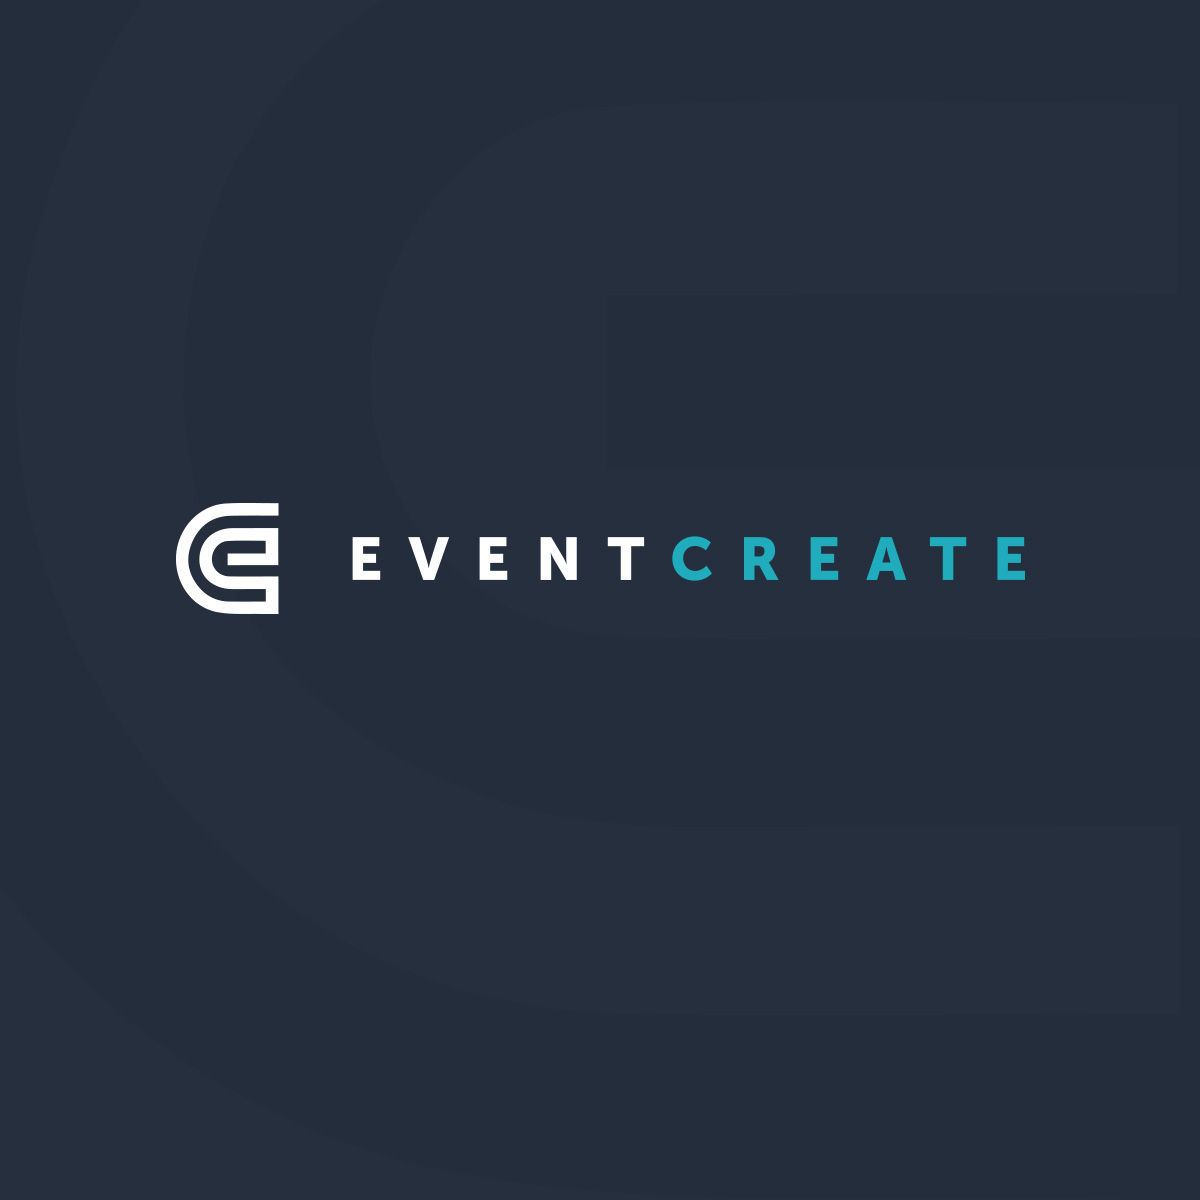 www.eventcreate.com